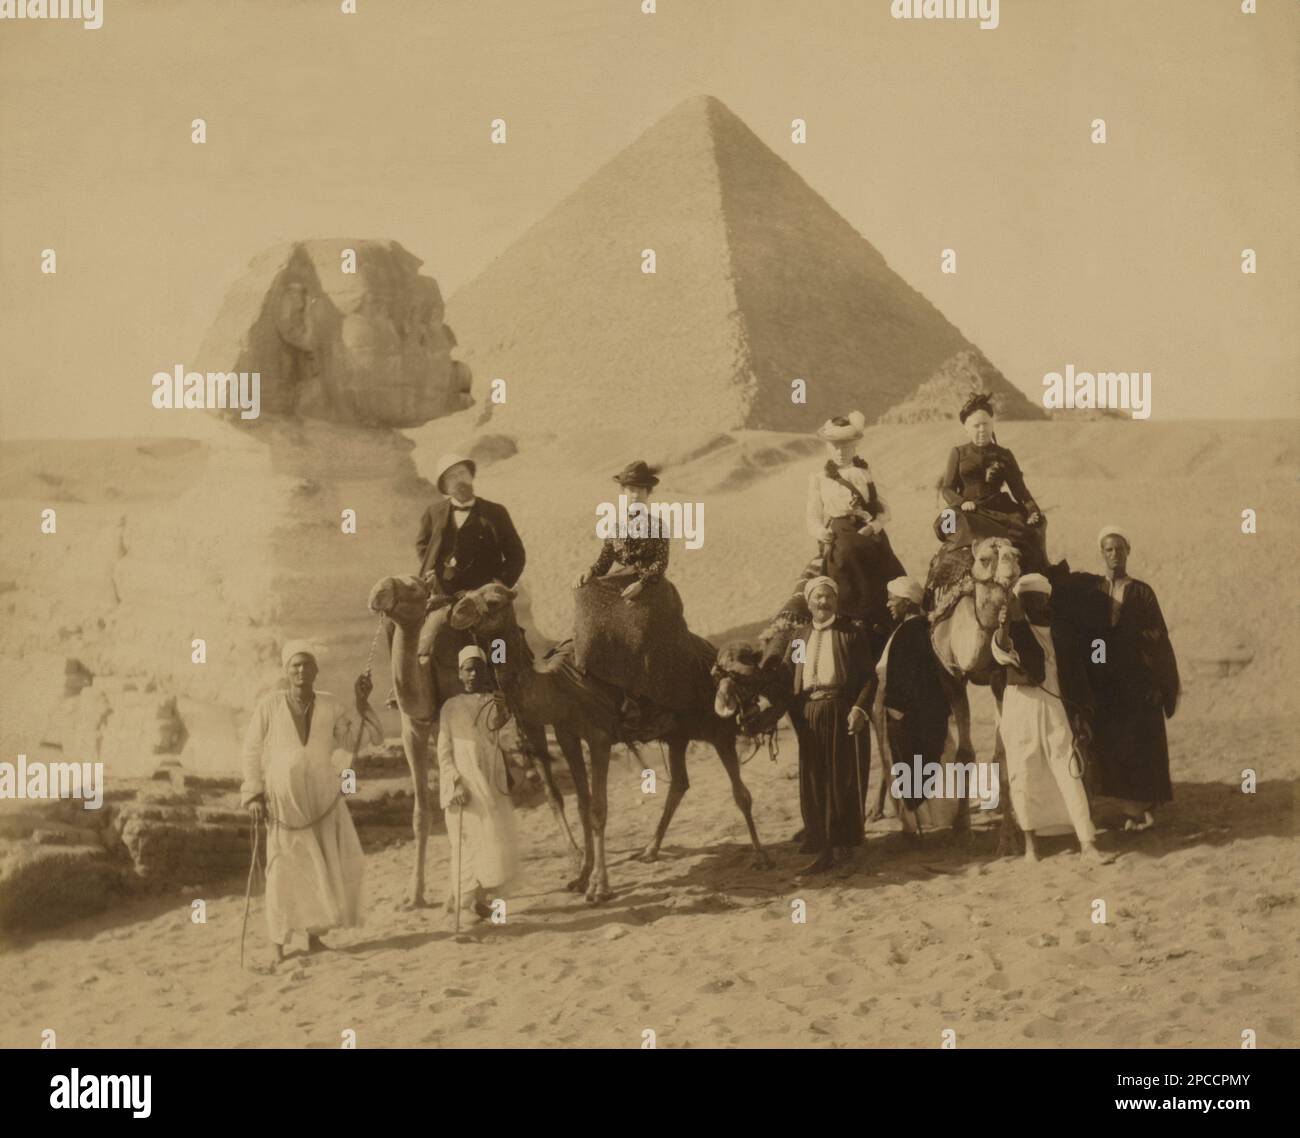 1890  ca. , GIZA , El CAIRO , EGYPT : Rich american tourists visiting The Great Pyramid of  Giza  and the Great Sphinx in Giza Necropolis  . Undentified photofrapher . - ANTICO EGITTO - GRANDE SFINGE - PIRAMIDE - PIRAMIDI -  FOTO STORICHE - HISTORY - GEOGRAFIA - GEOGRAPHY  - ARCHITETTURA - ARCHITECTURE - ARCHEOLOGIA - ARCHEOLOGY -  Pyramids - monumento -   - Scavi archeologici - Sito archeologico - TURISMO - TURISTI - TOURISTS - VIAGGIO - TRAVEL  ----  Archivio GBB Stock Photo